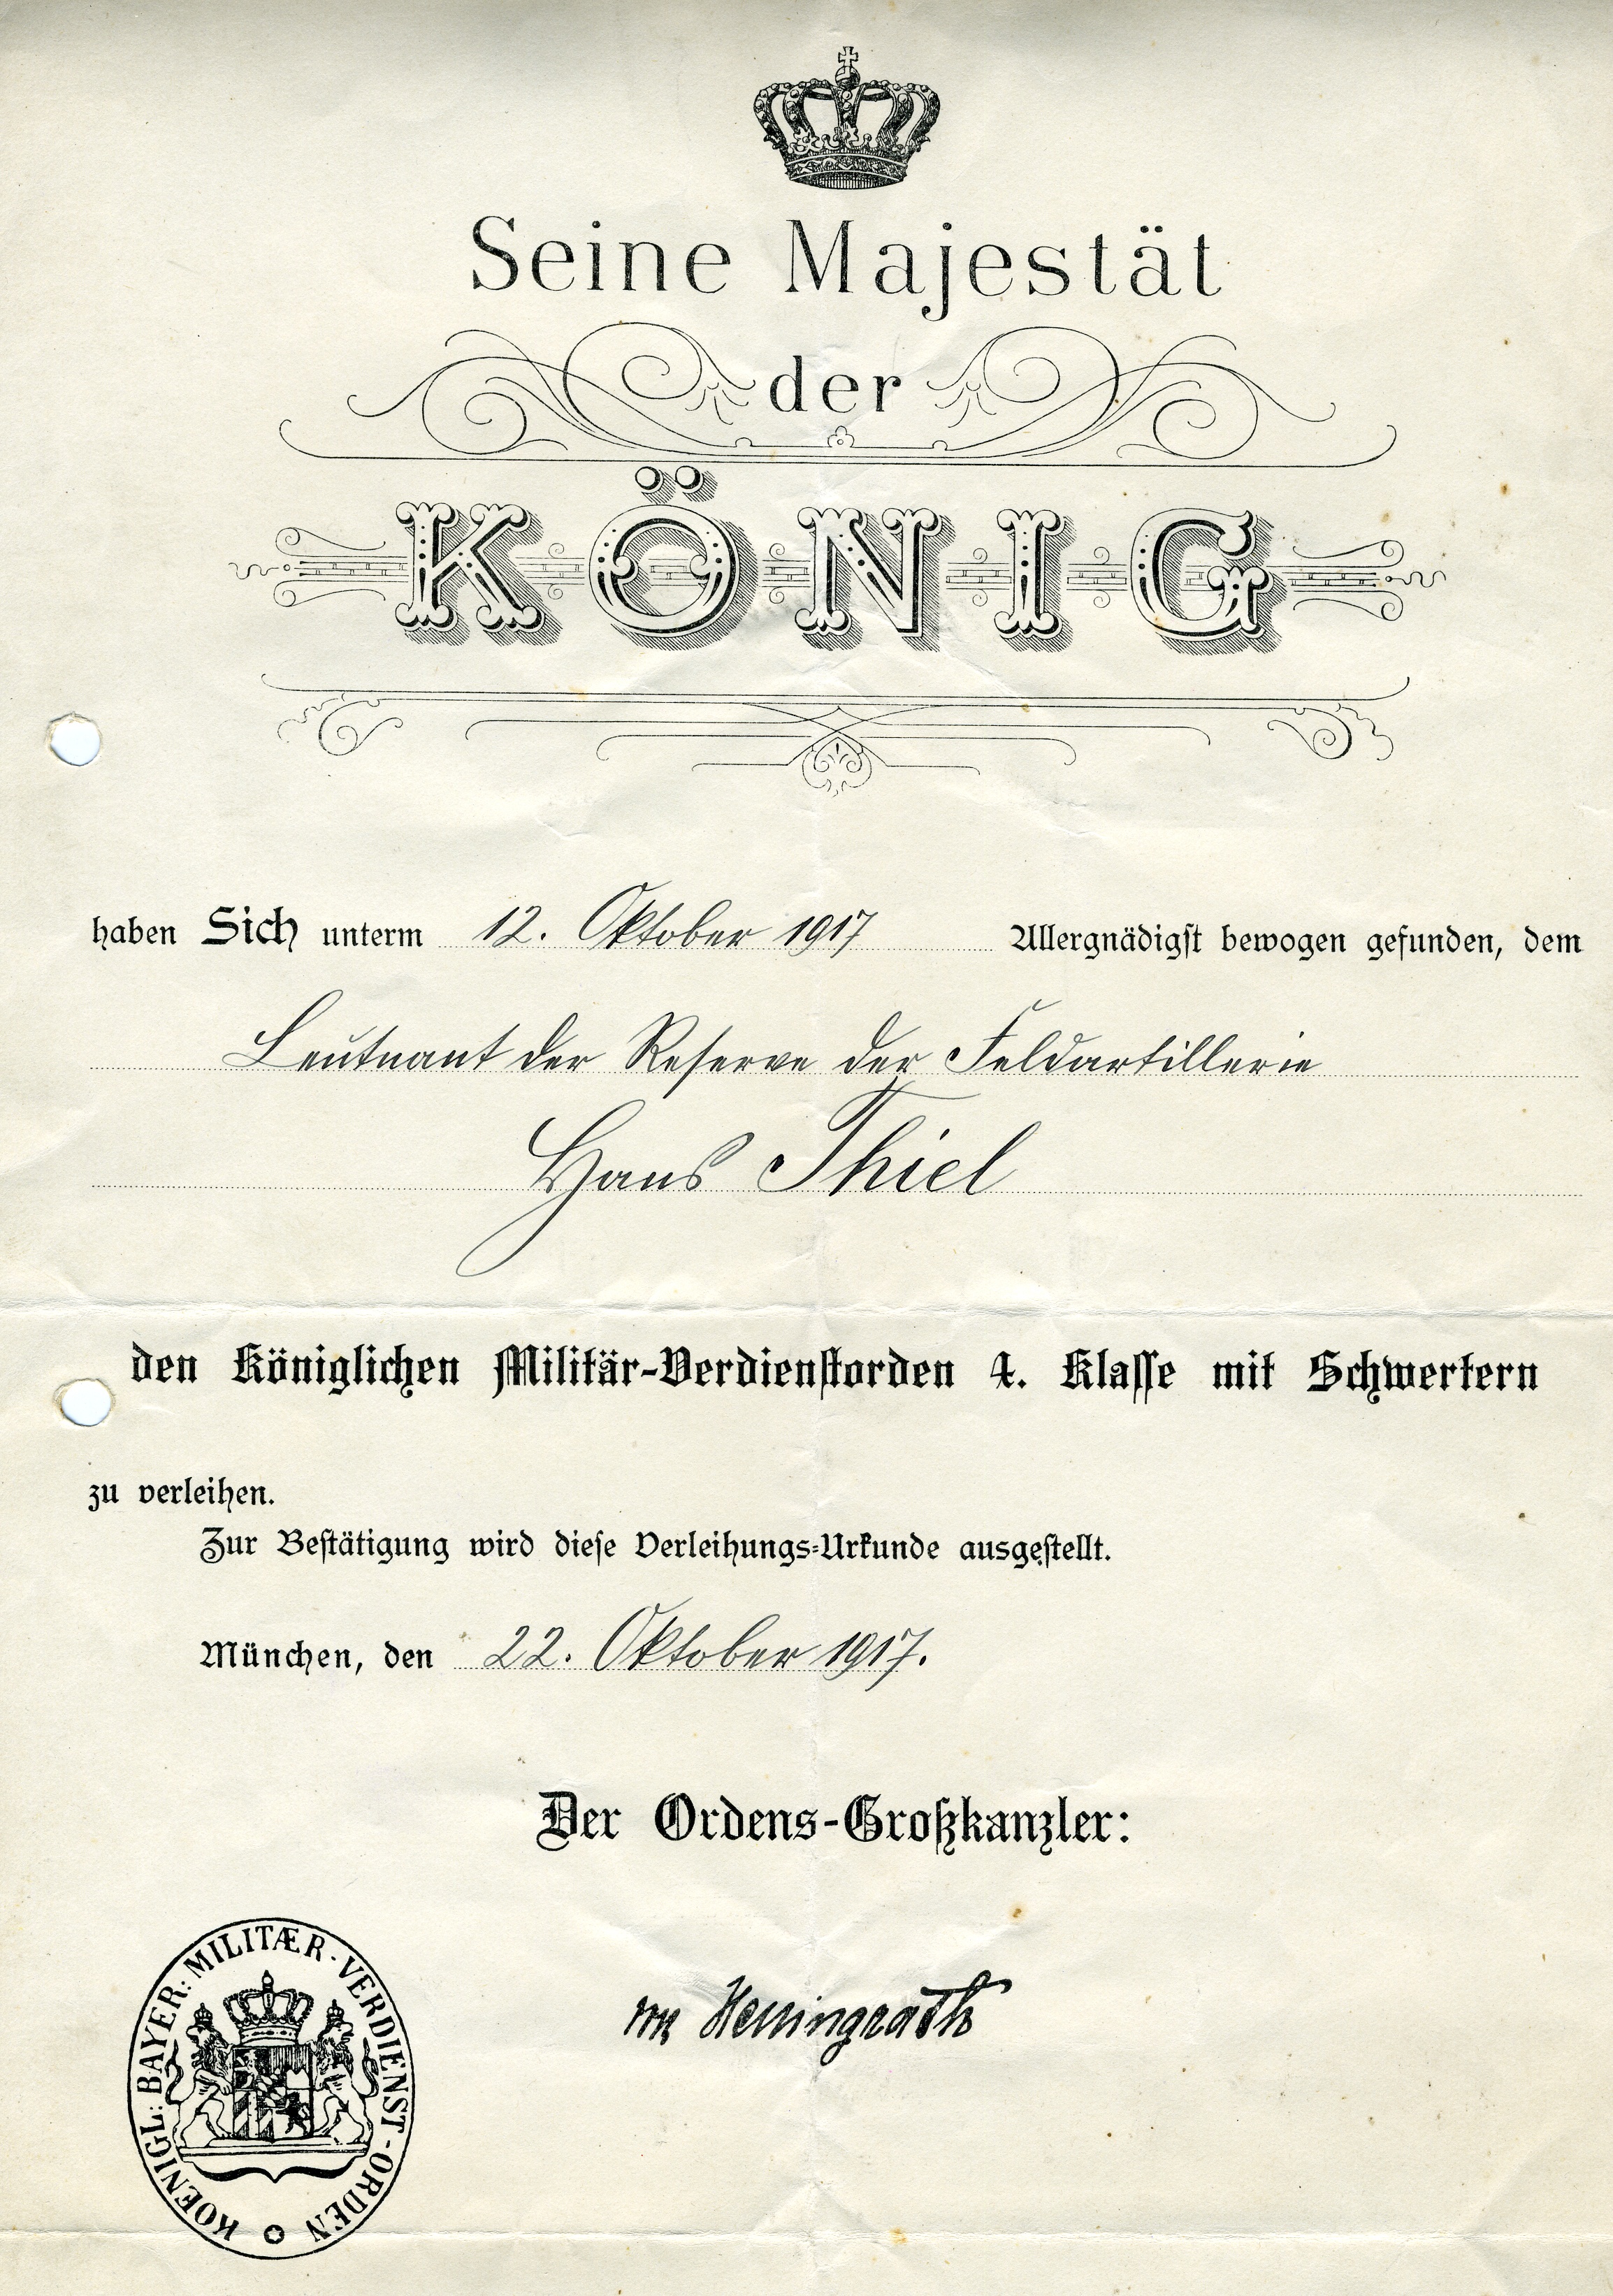 Königlich bayerische Urkunde "Militär-Verdienstorden" (Historisches Museum der Pfalz, Speyer CC BY)